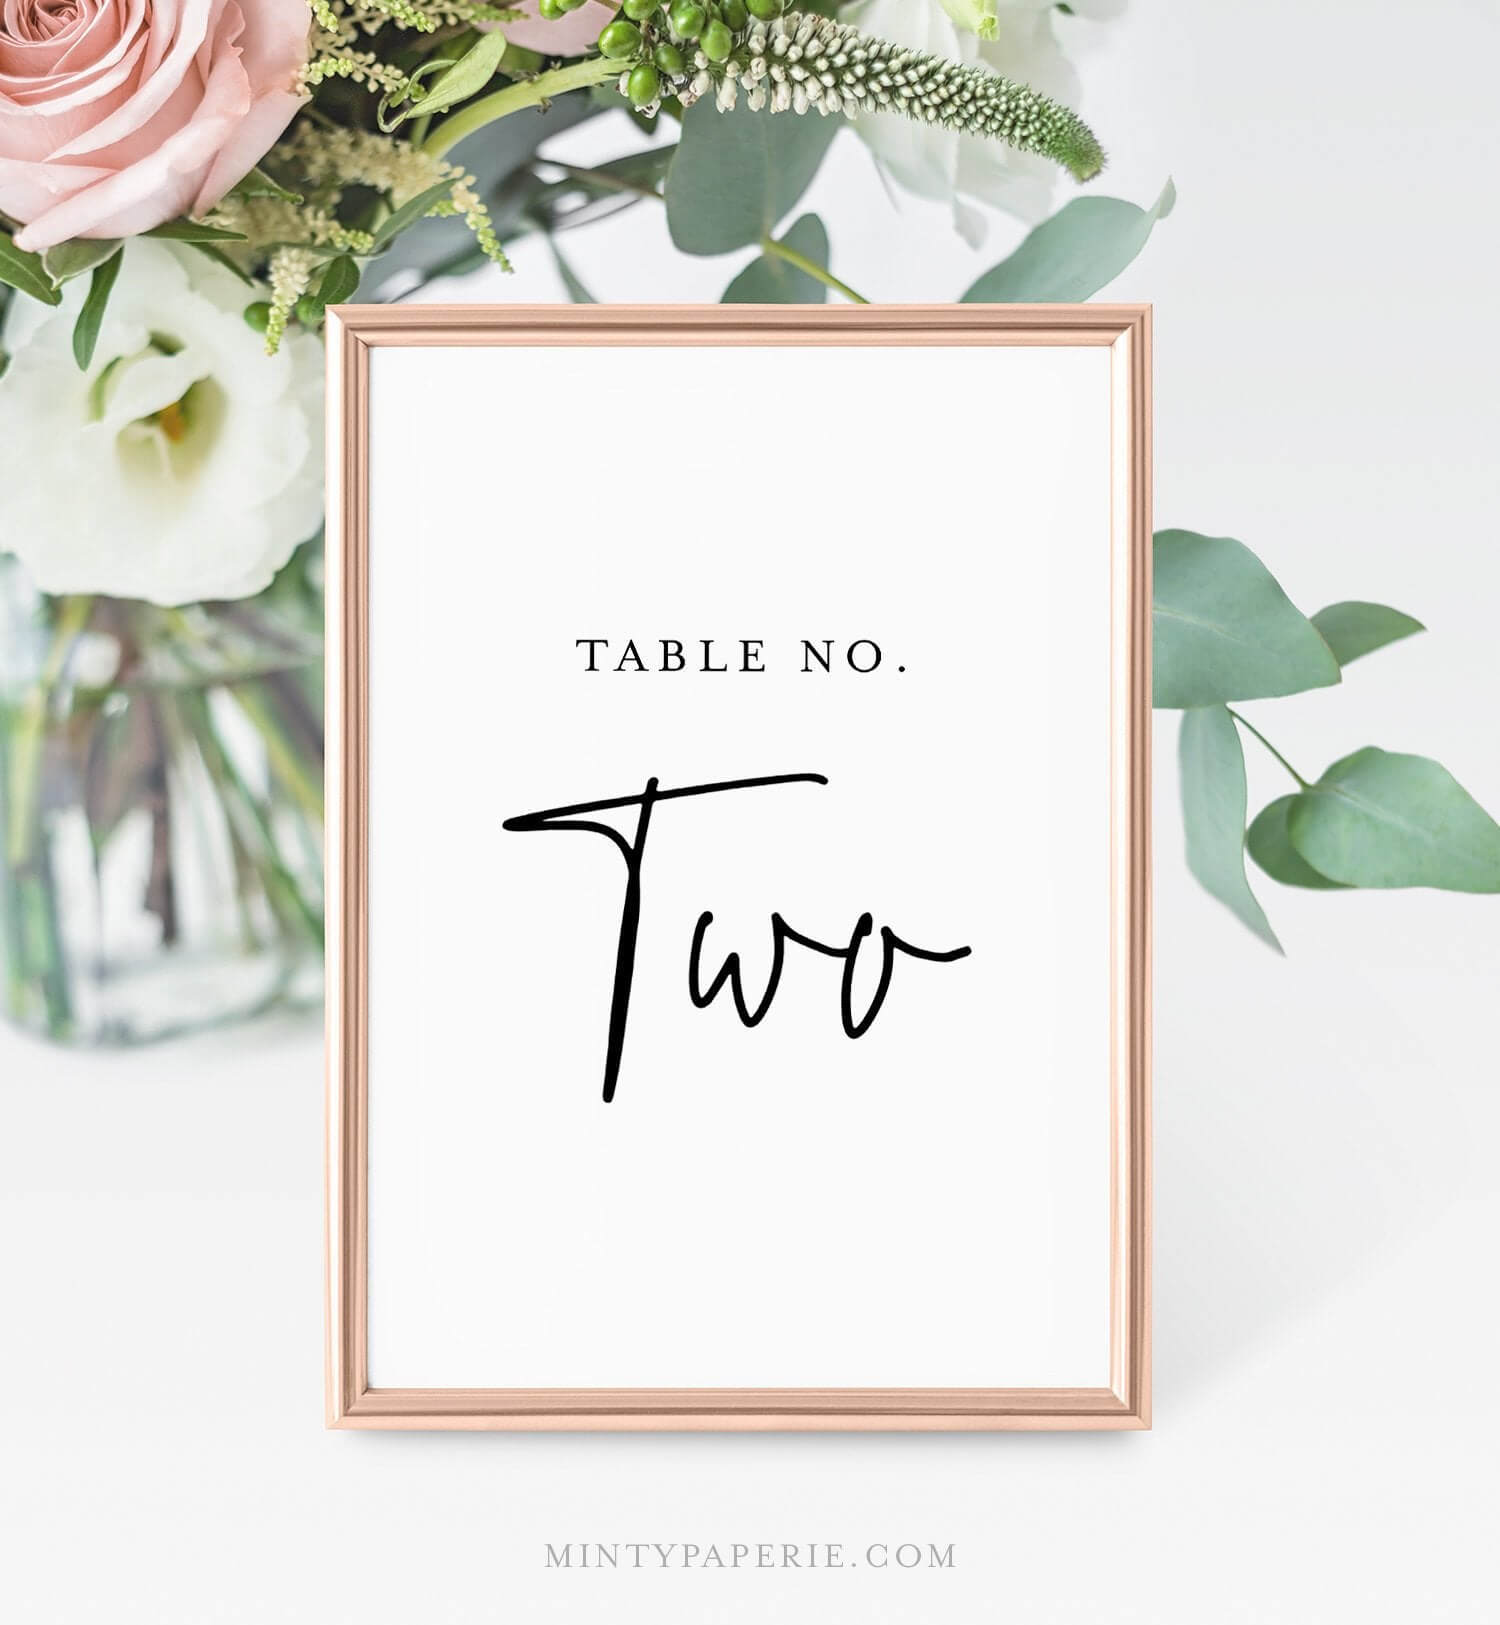 Printable Table Number Cards, Minimalist Wedding Table Inside Table Number Cards Template